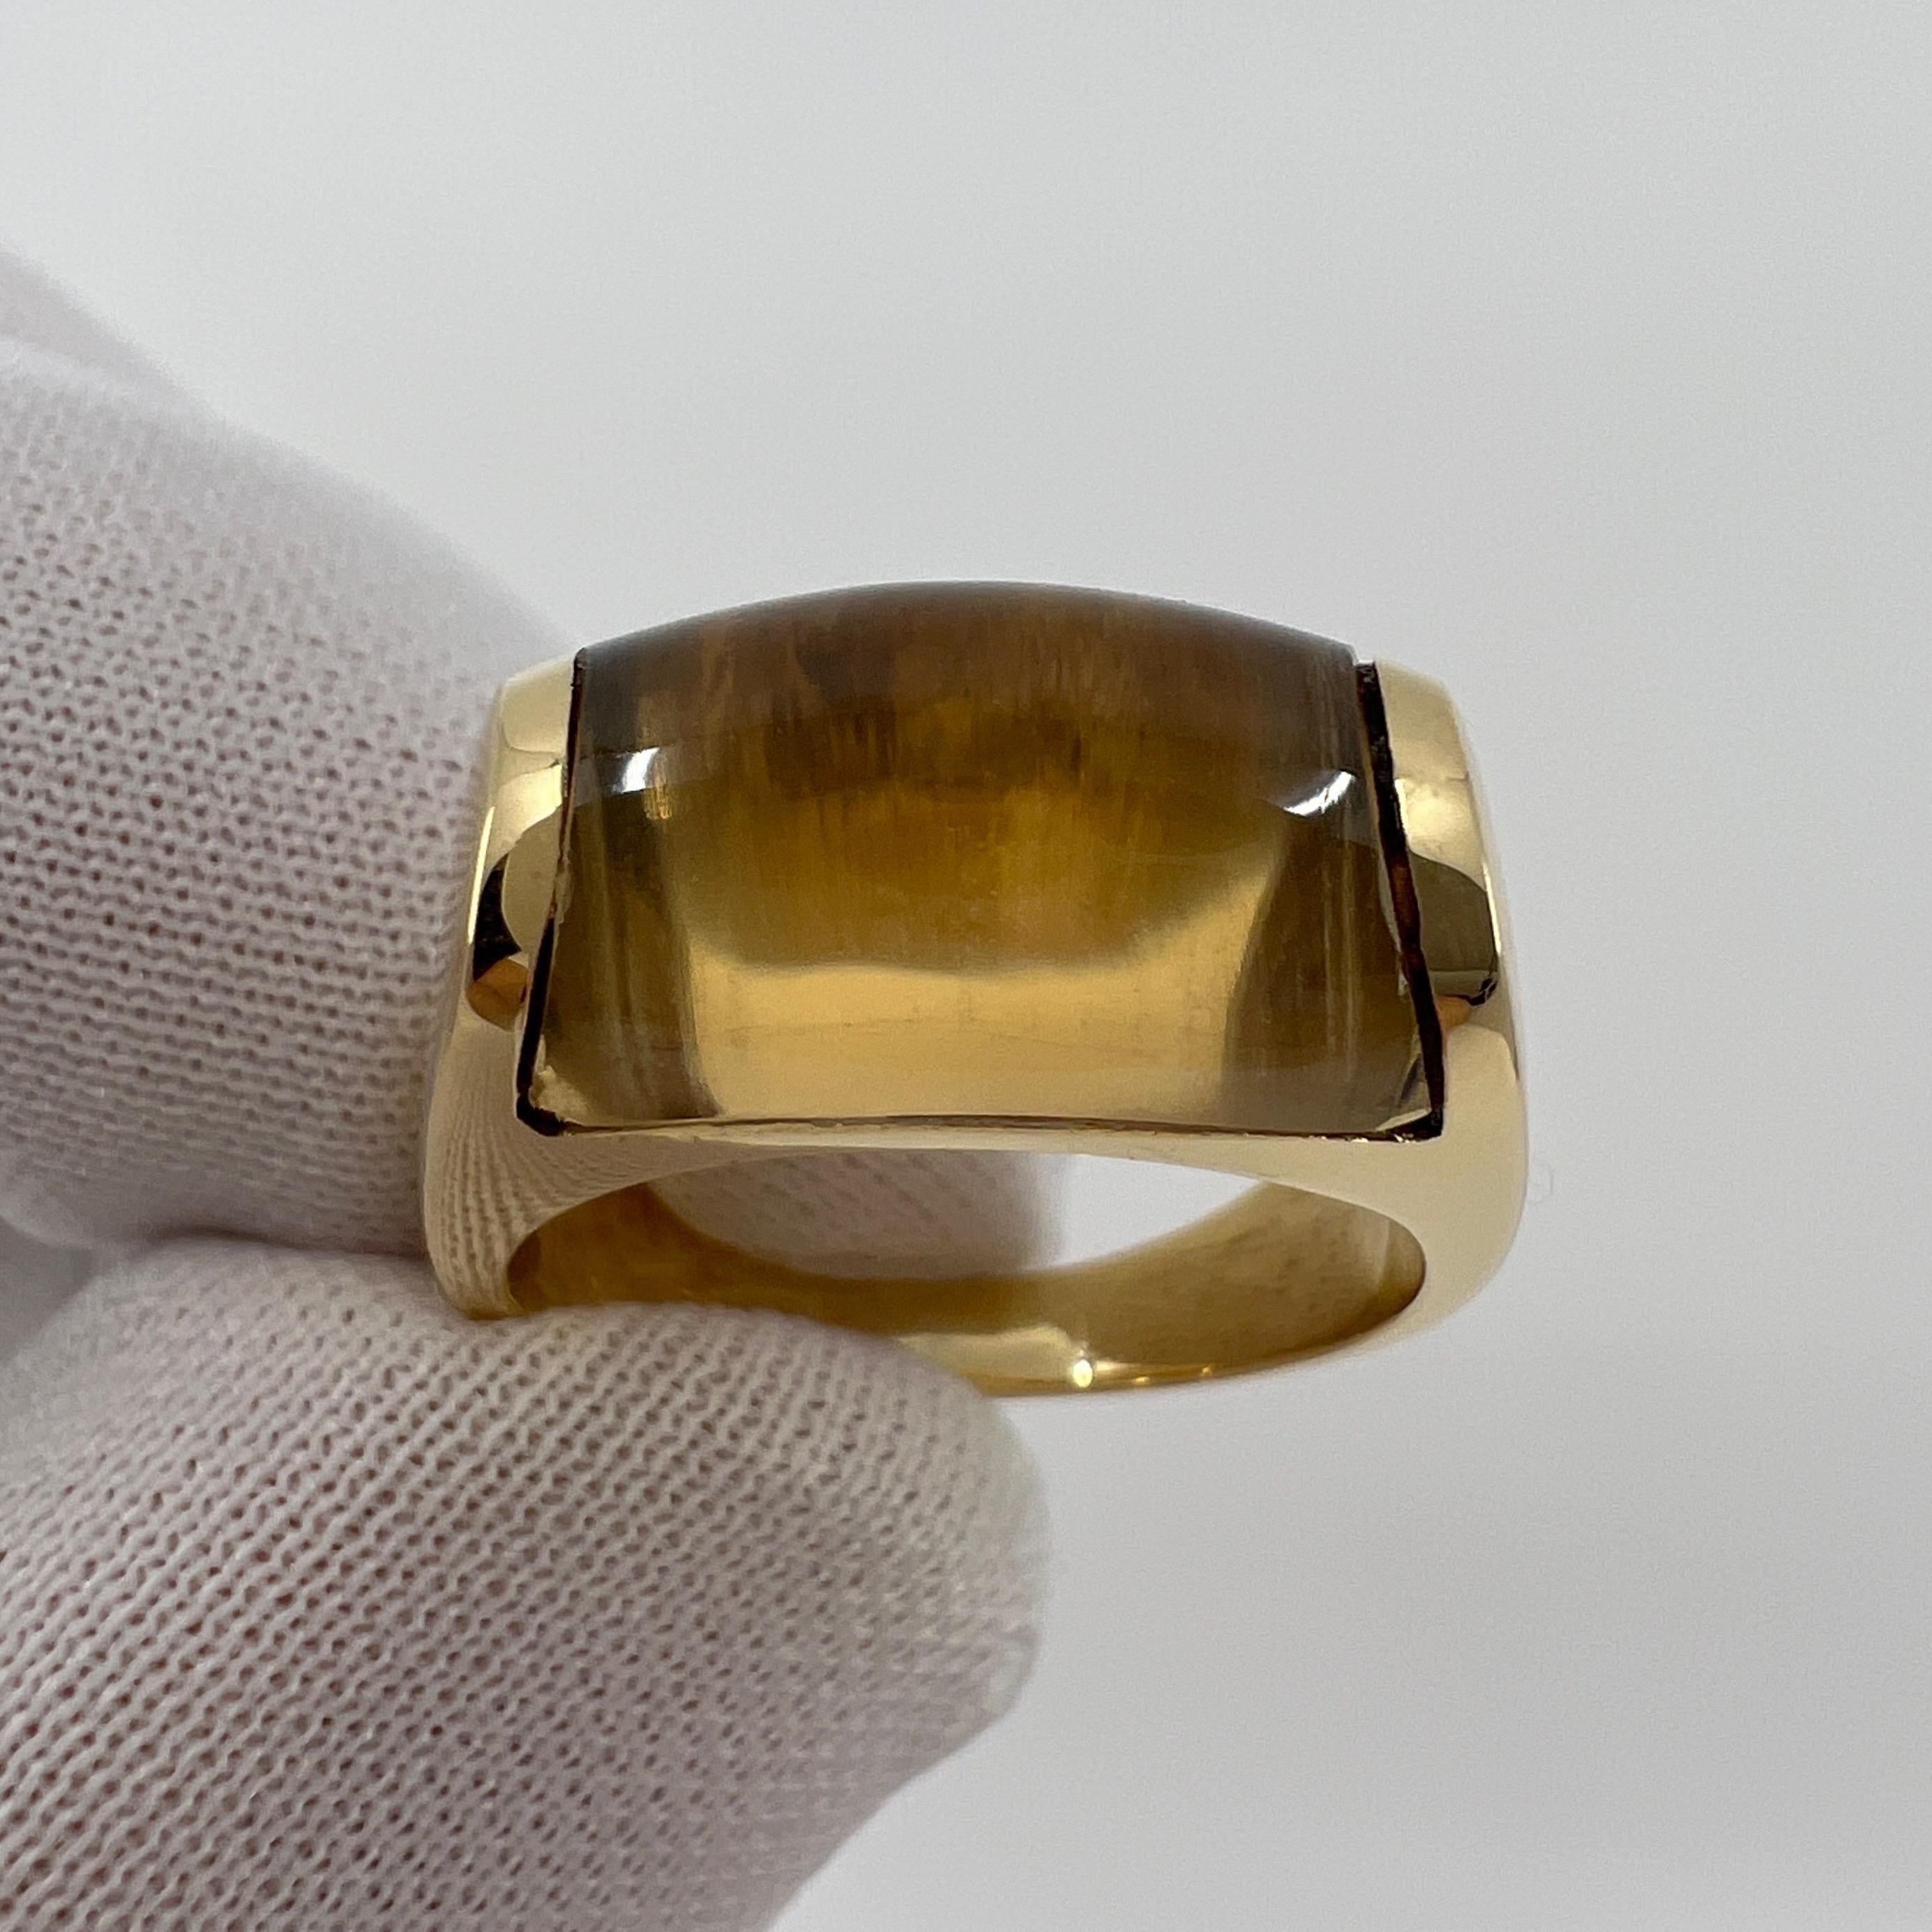 Rare Bvlgari Bulgari Tronchetto 18k Yellow Gold Yellow Citrine Ring with Box 5